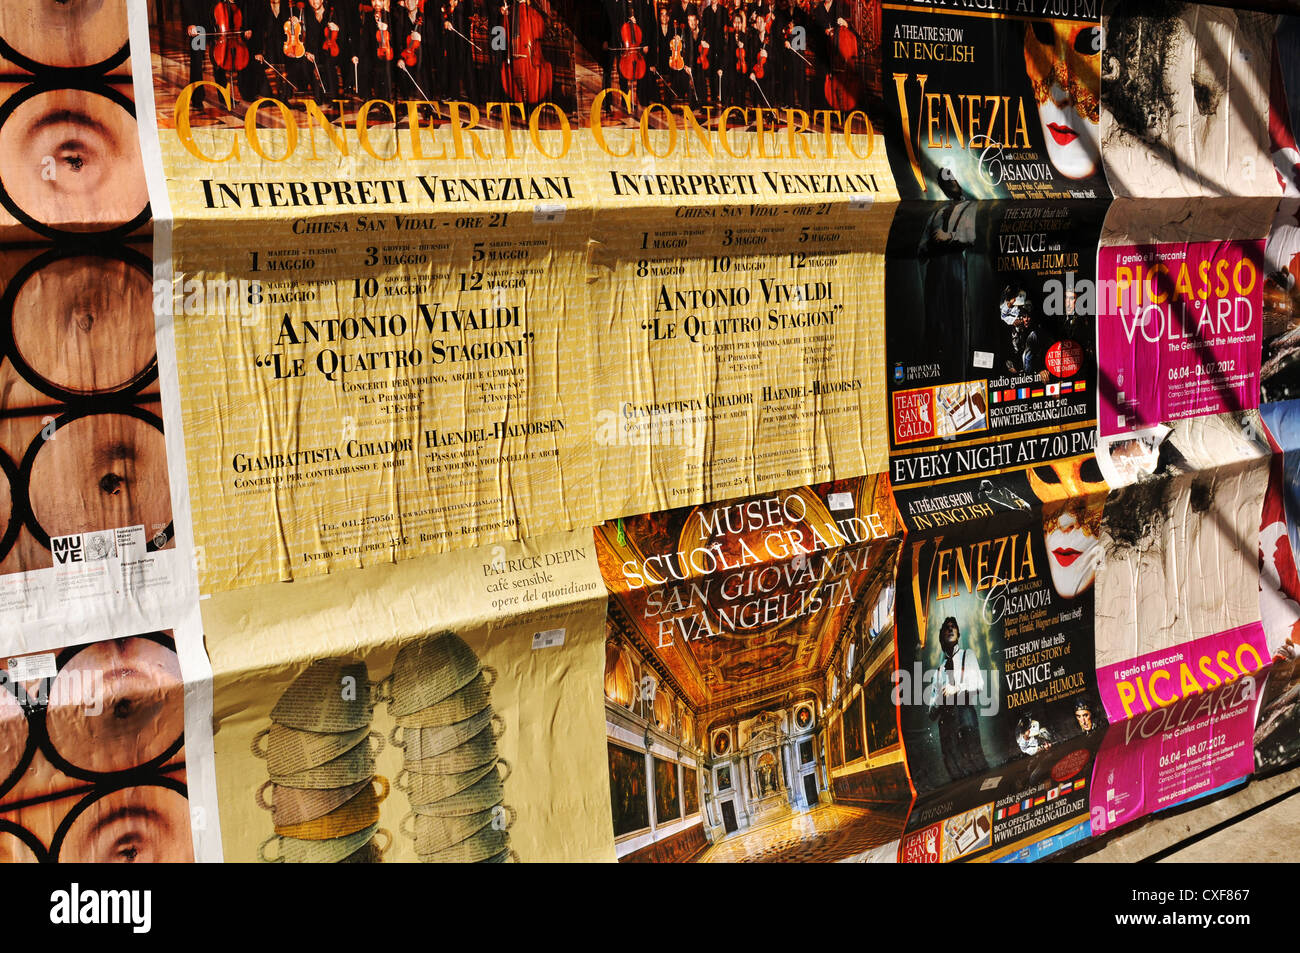 Venezia, Italia - 6 Maggio 2012: Evento Culturale pubblicizzato nel centro storico di Venezia Foto Stock